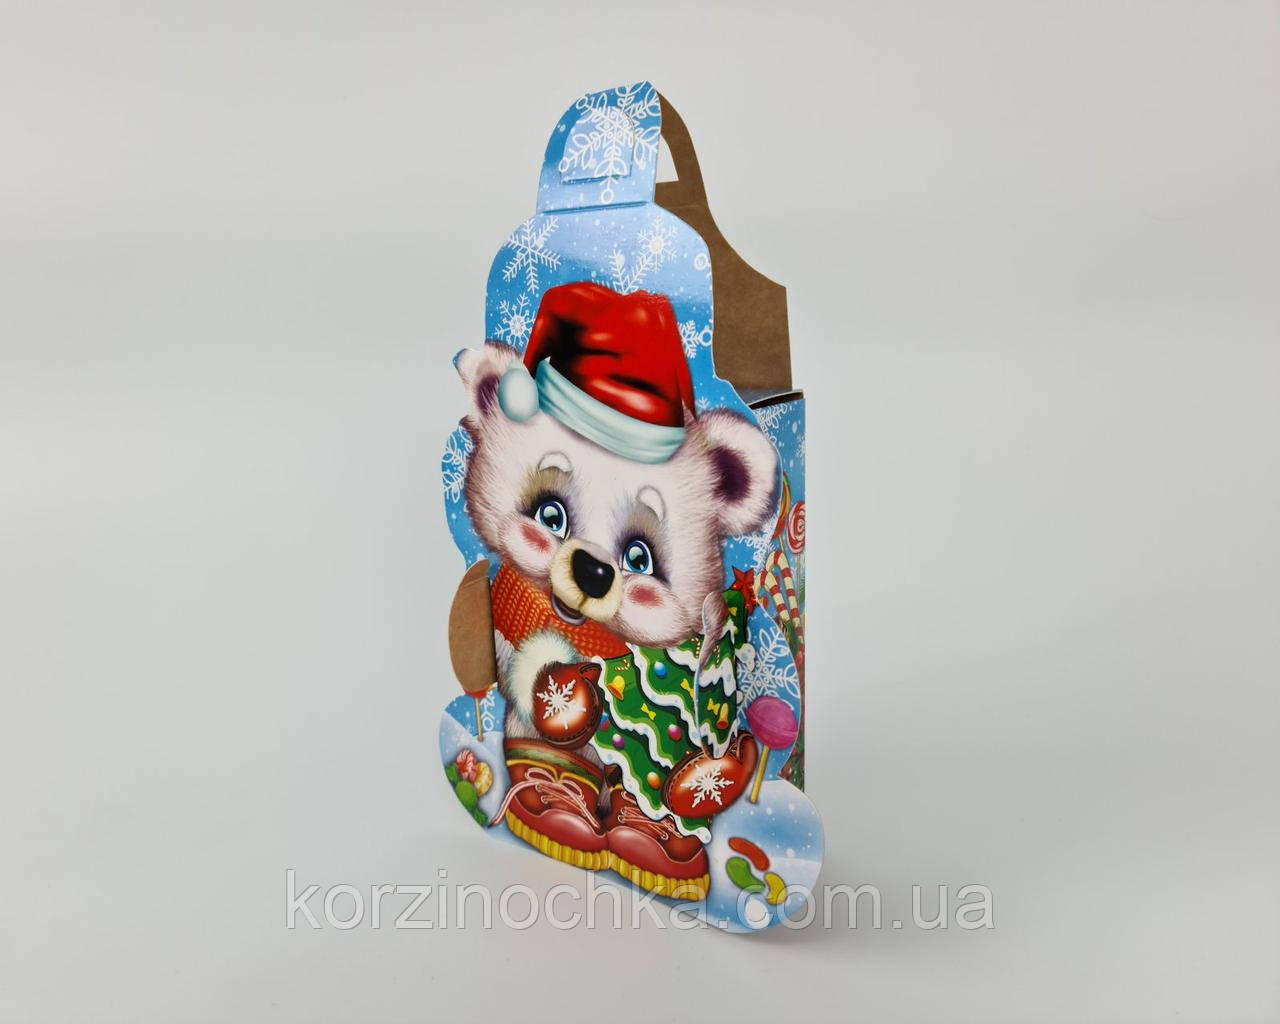 Новорічна Коробка для Цукерок(600гр)Медведик в рукавичках(1 шт)Новорічна упаковка для цукерок та подарунків